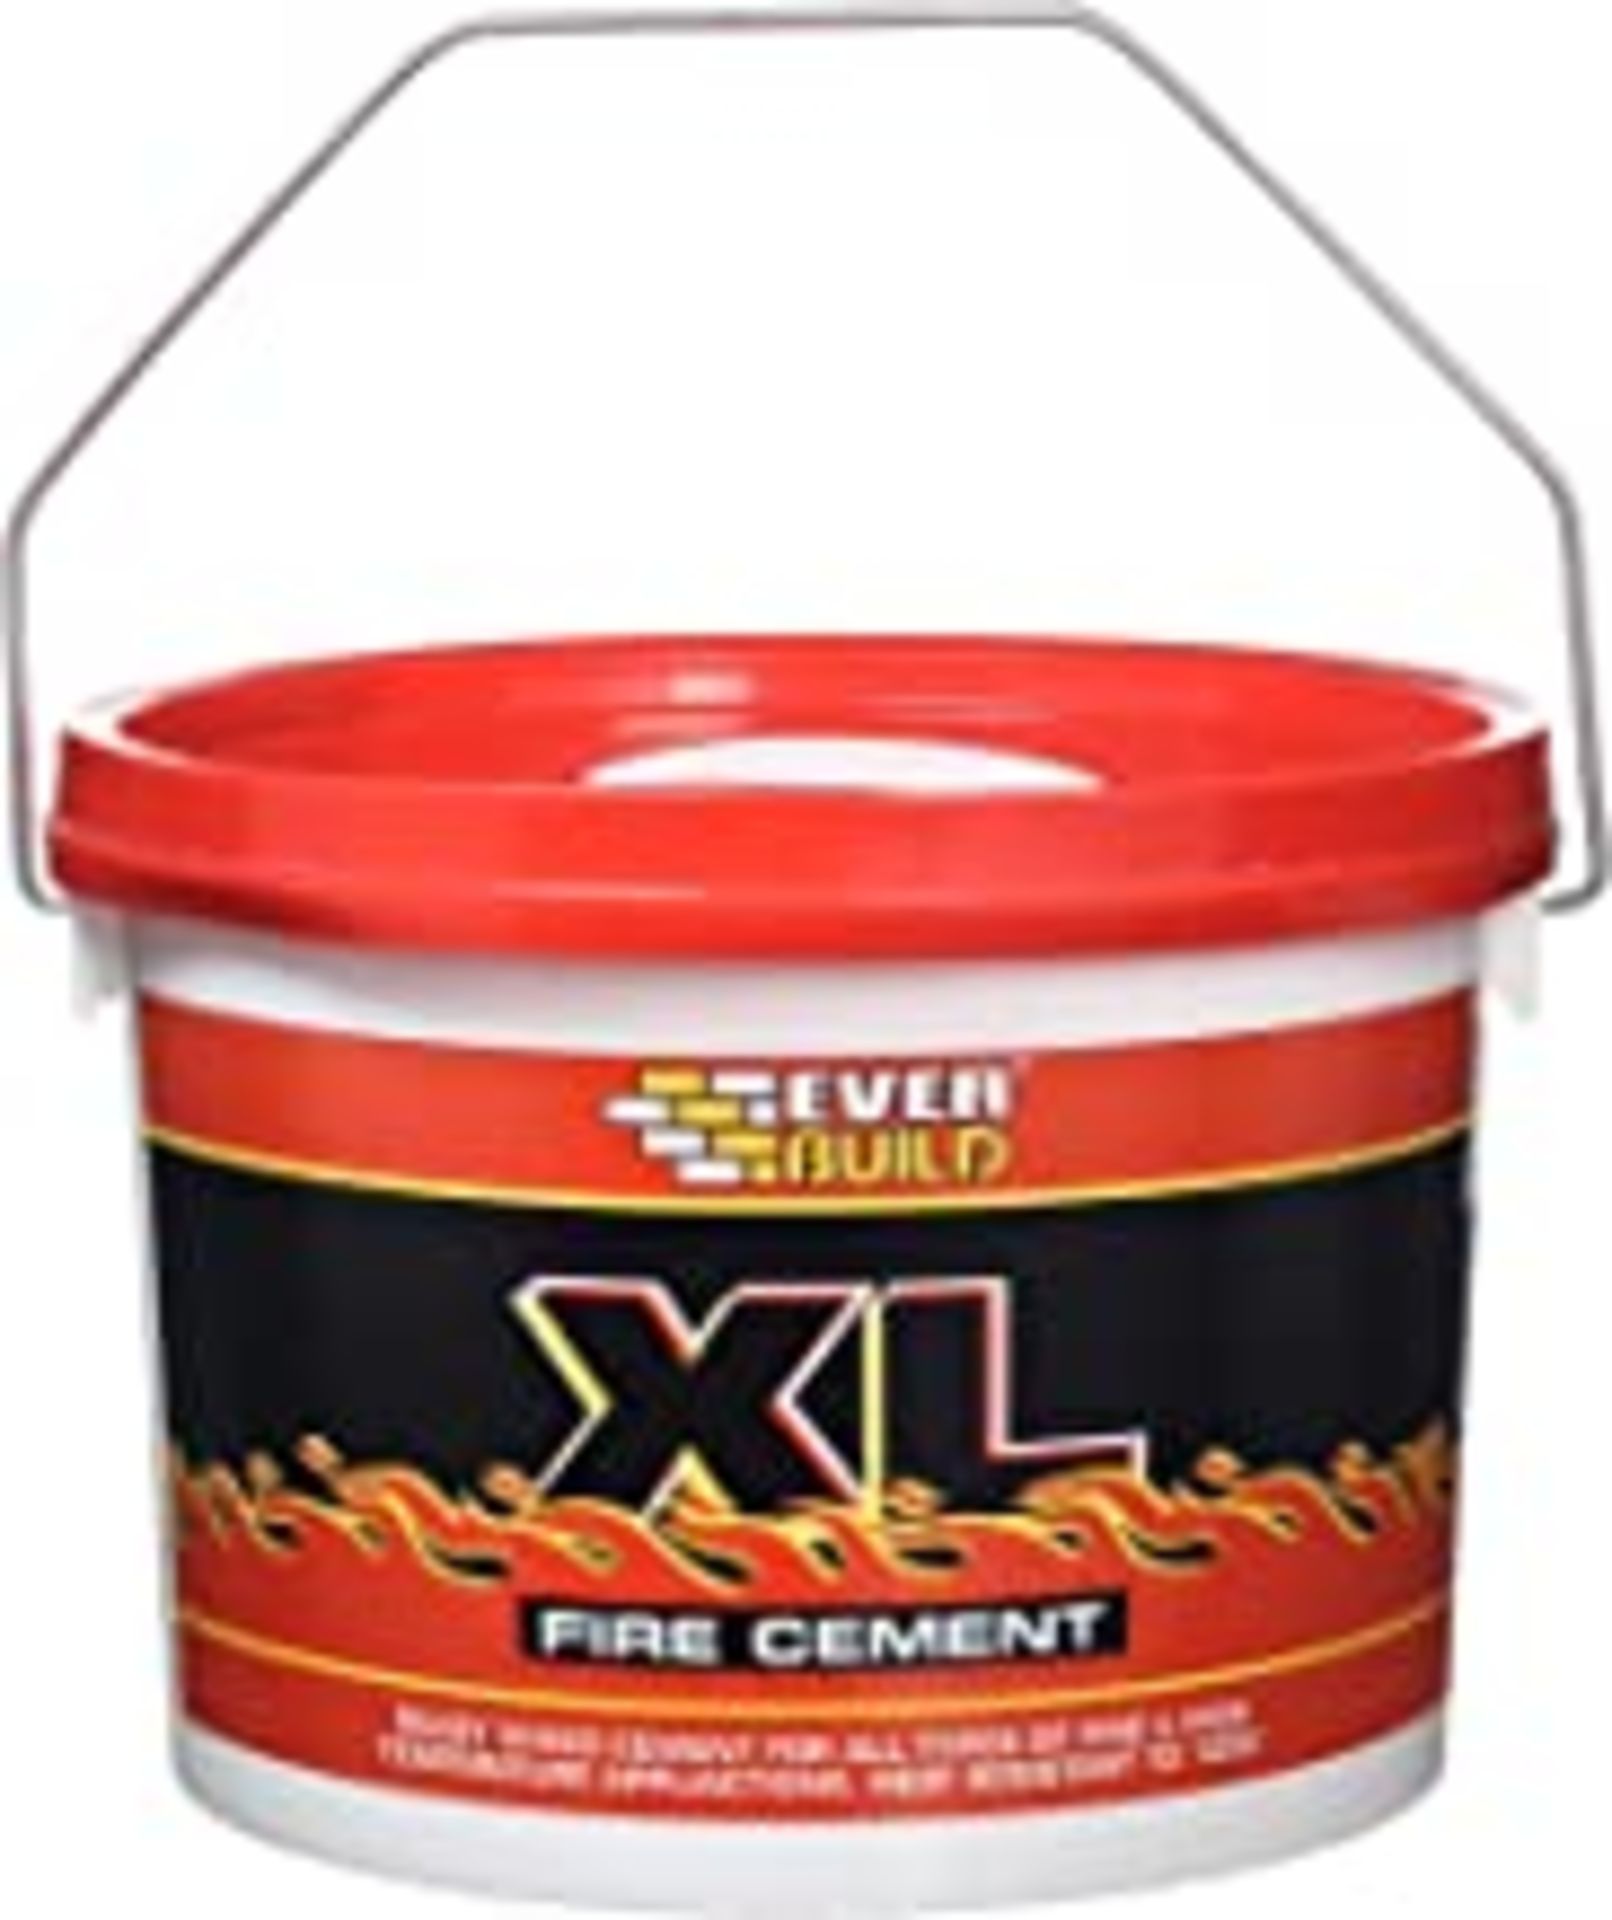 2 x Everbuild Fire Cement 1K